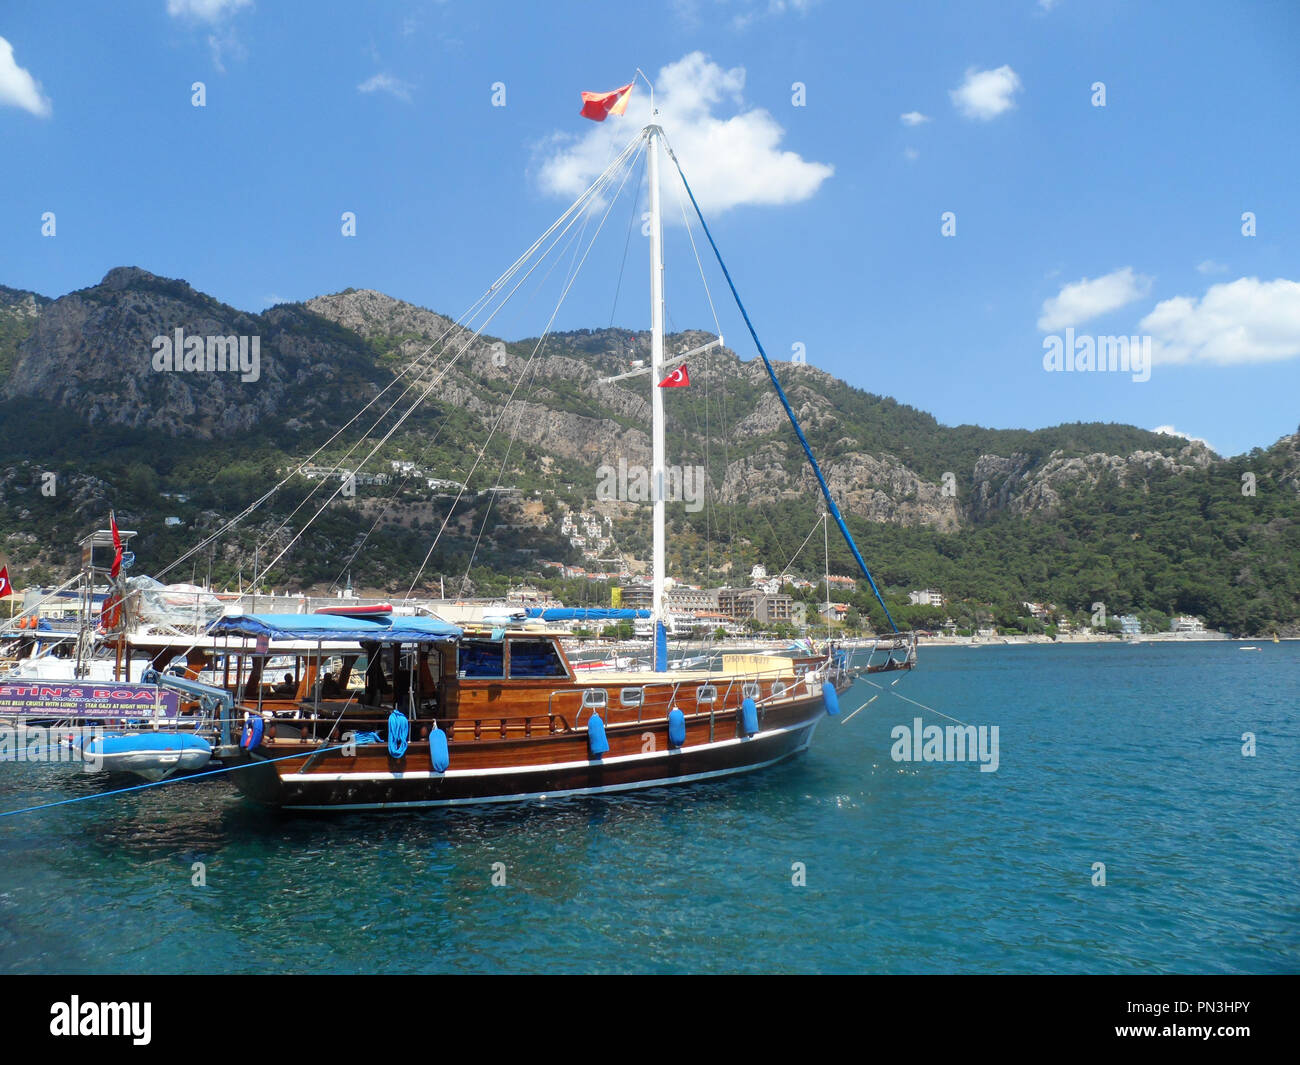 Turkish gulet cruise boat moored alongside the harbour at Turunc, Mugla province, Turkey Stock Photo